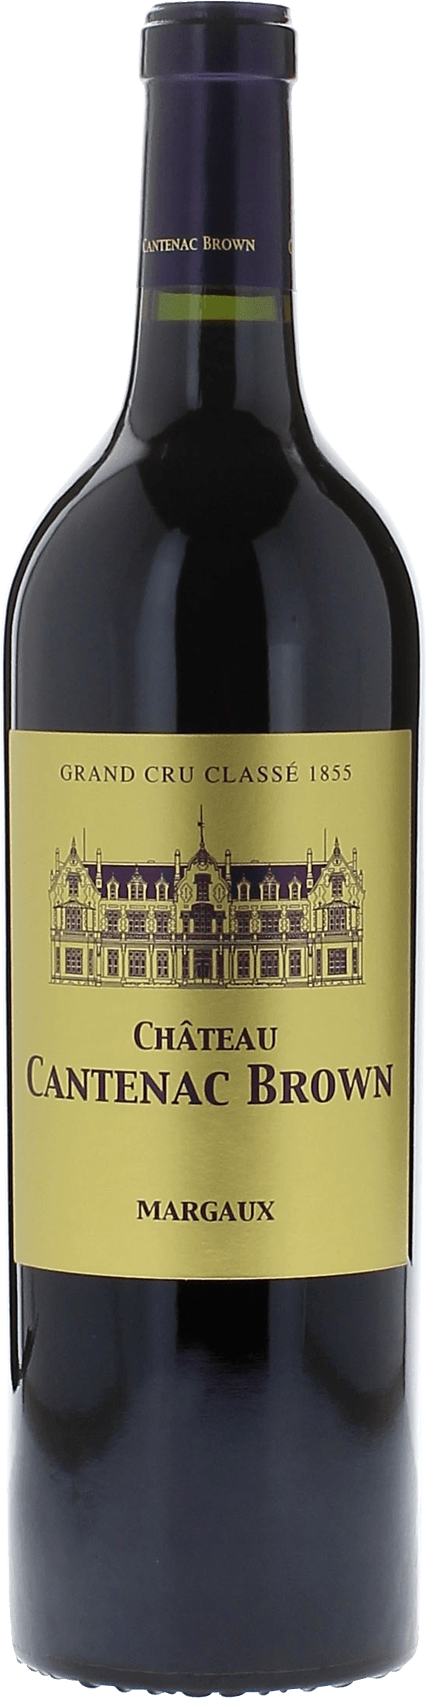 Cantenac brown 1991 2me Grand cru class Margaux, Bordeaux rouge